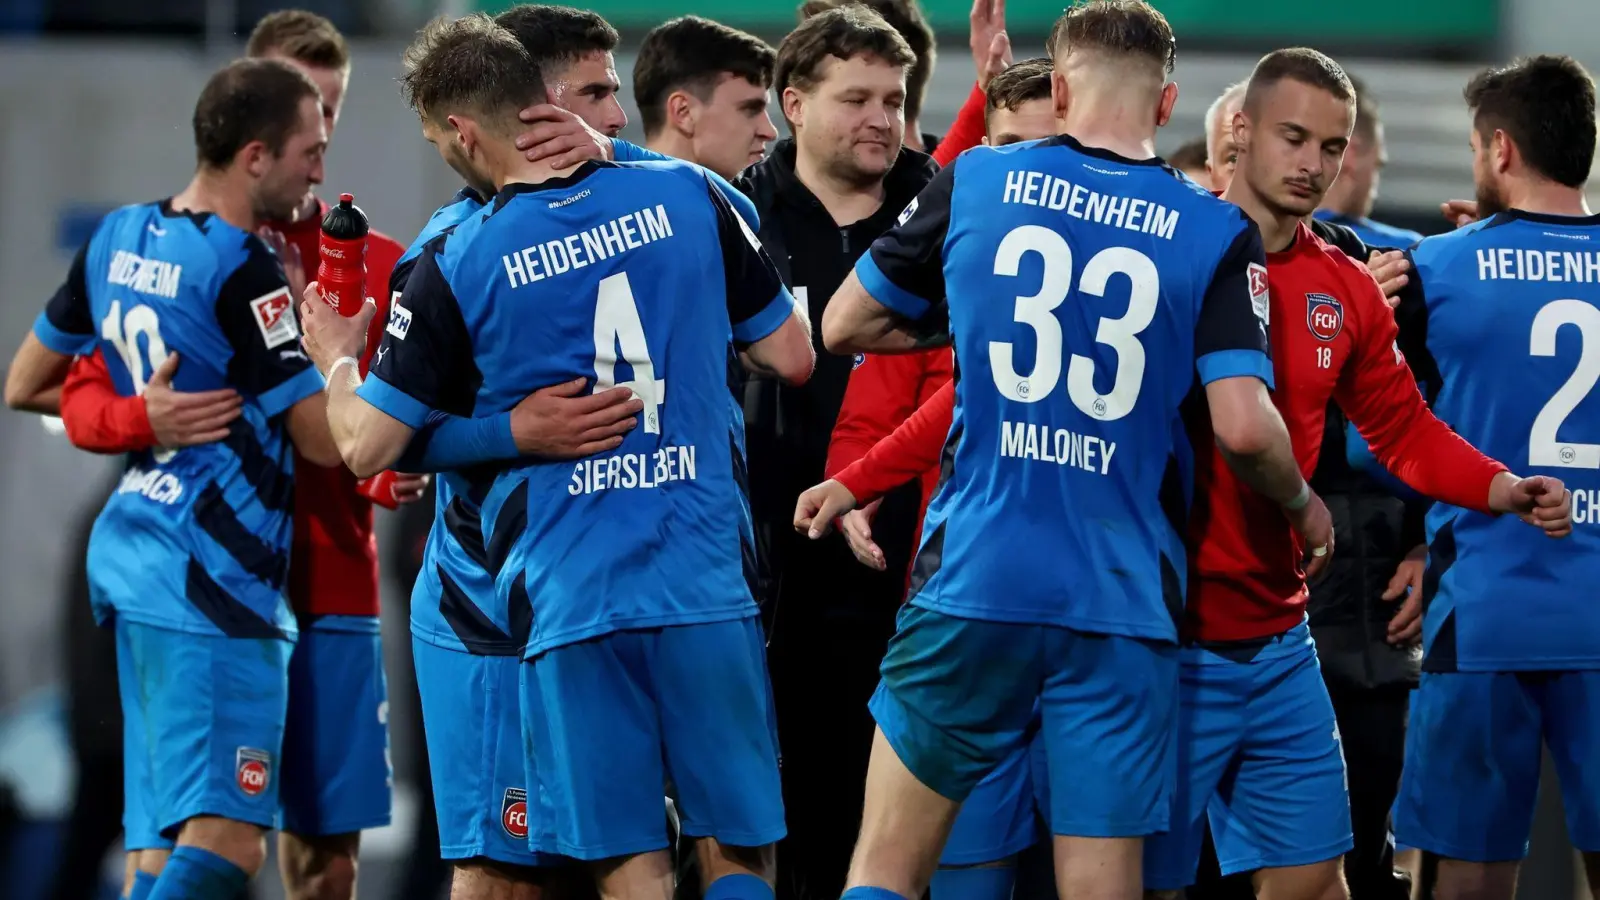 Heidenheims Spieler bejubeln den Sieg. (Foto: Daniel Karmann/dpa)